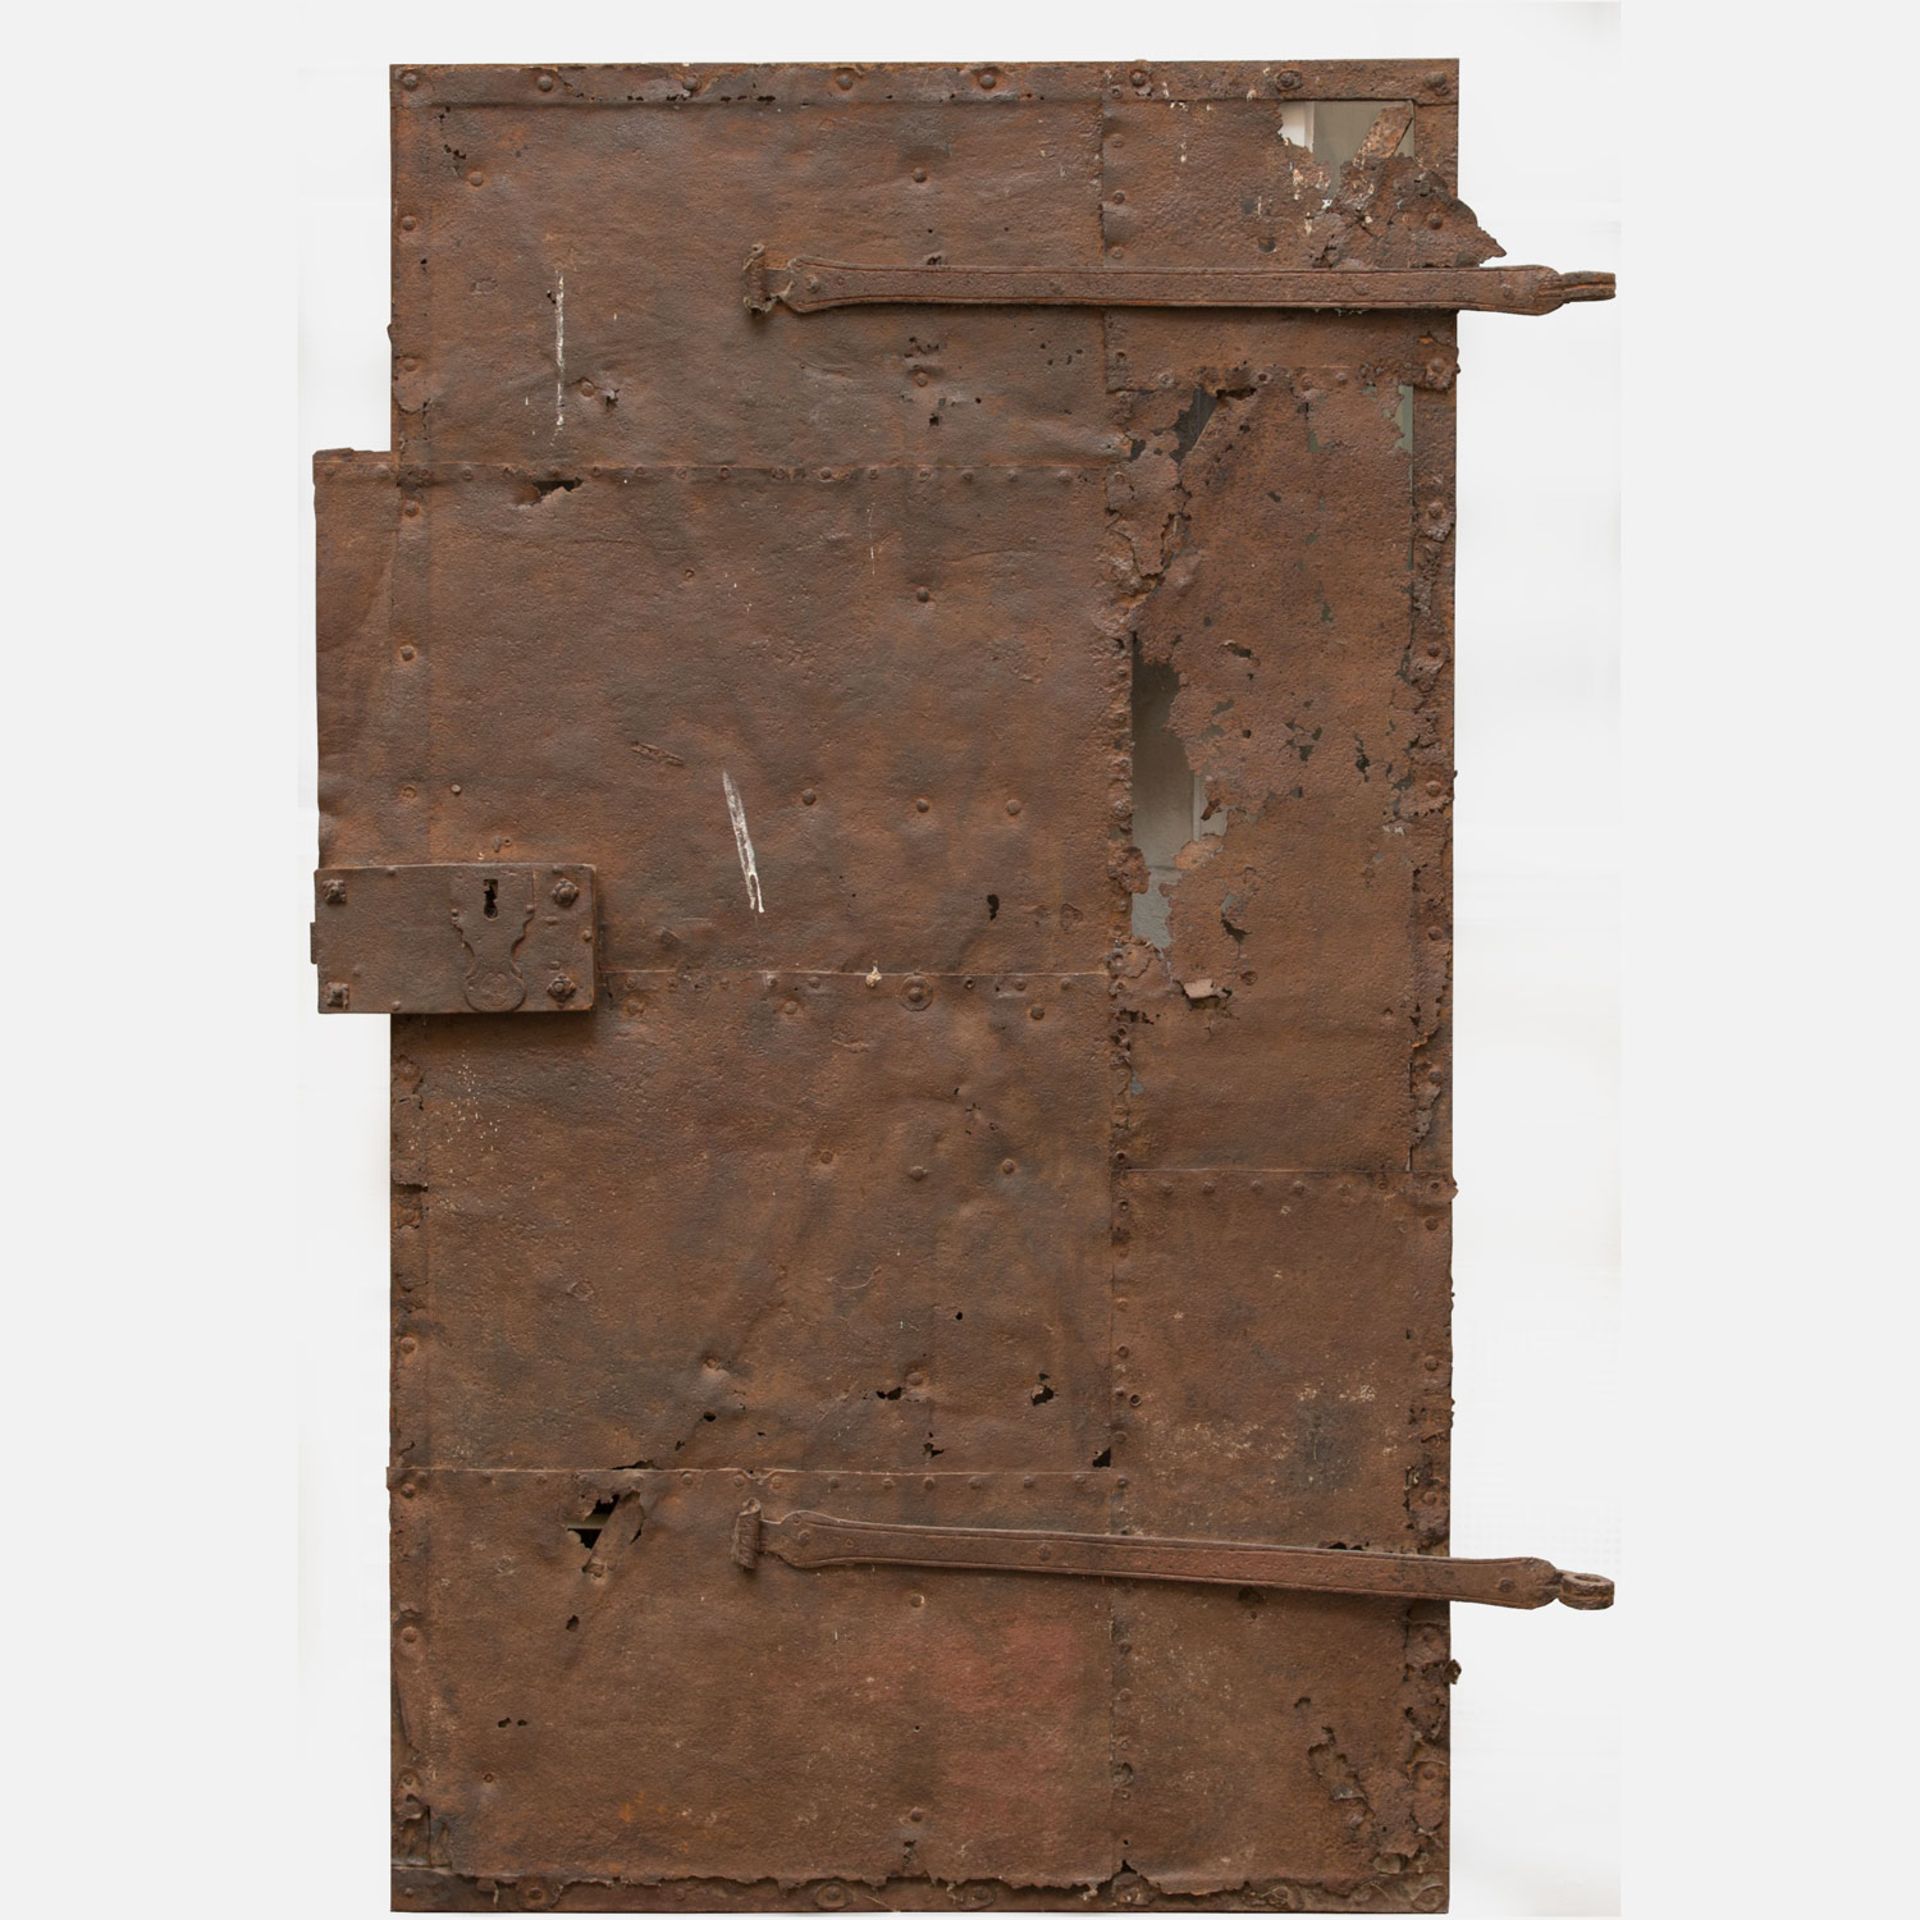 Early Austrian iron door - Image 3 of 3